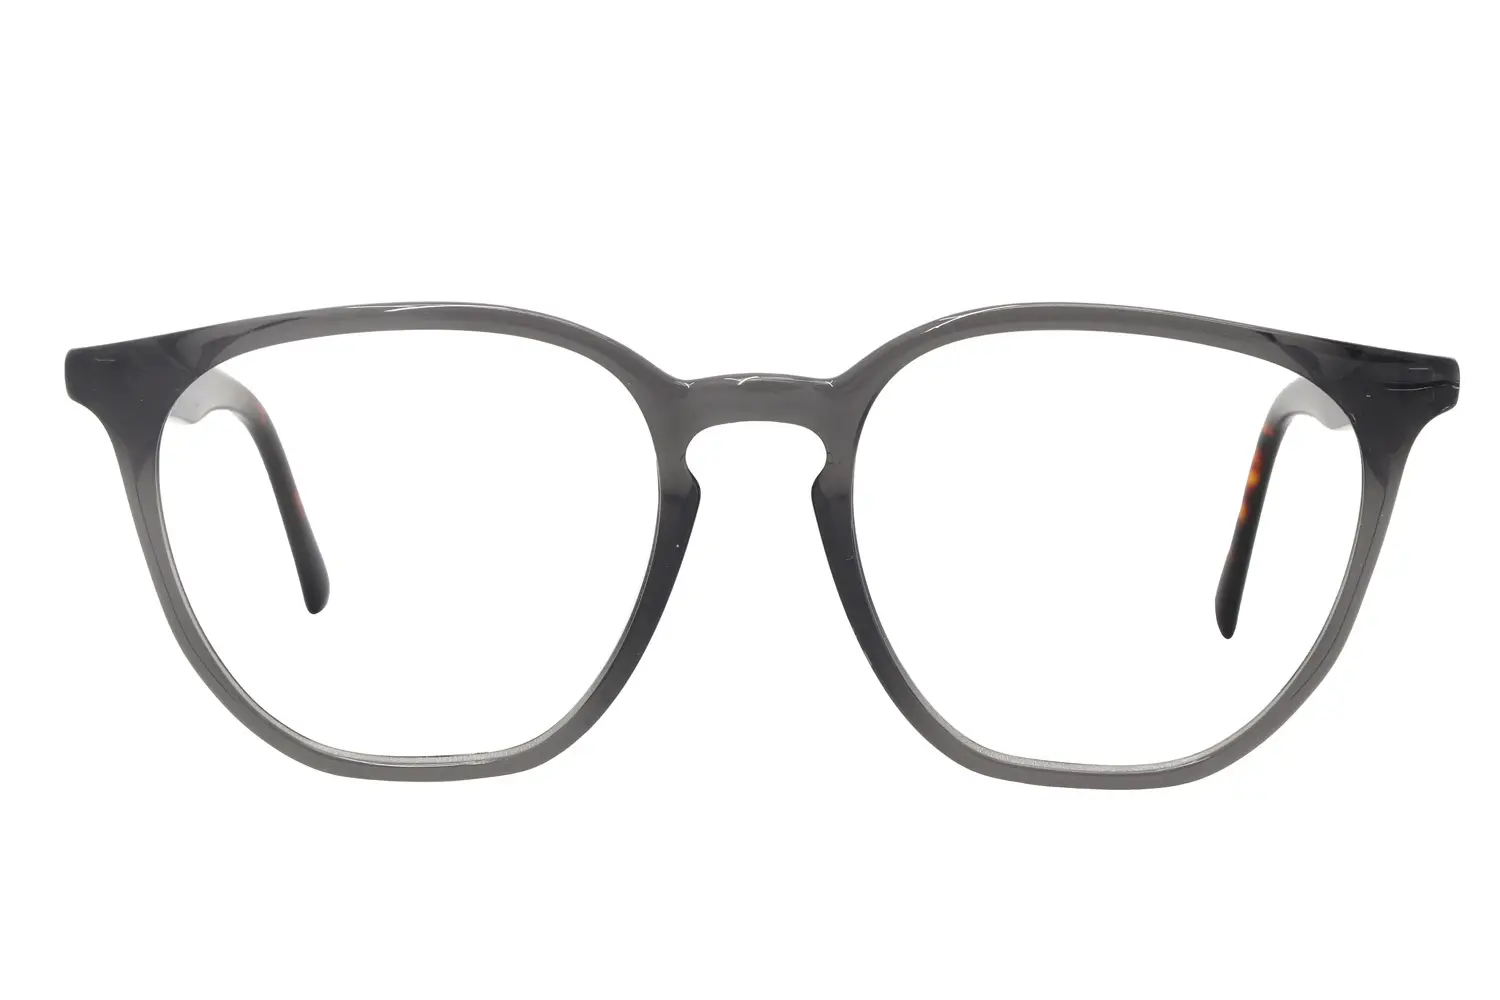  عینک طبی RAY BAN مدل ARX7151 C3066 - دکترعینک